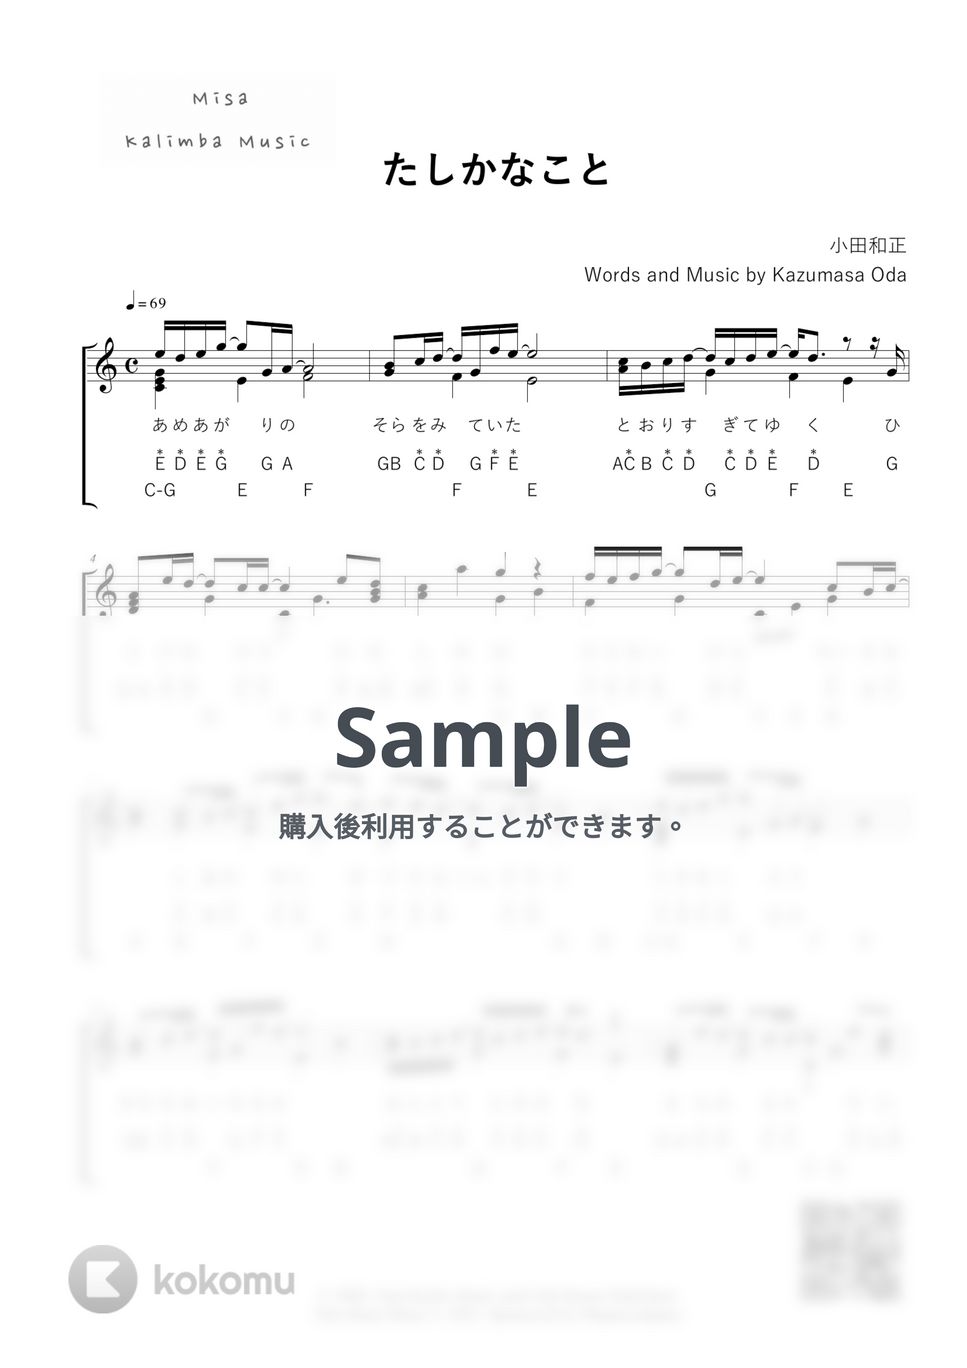 小田和正 - たしかなこと / 英音名表記 / 17音カリンバ (歌詞付き / 模範演奏付き) by Misa / Kalimba Music